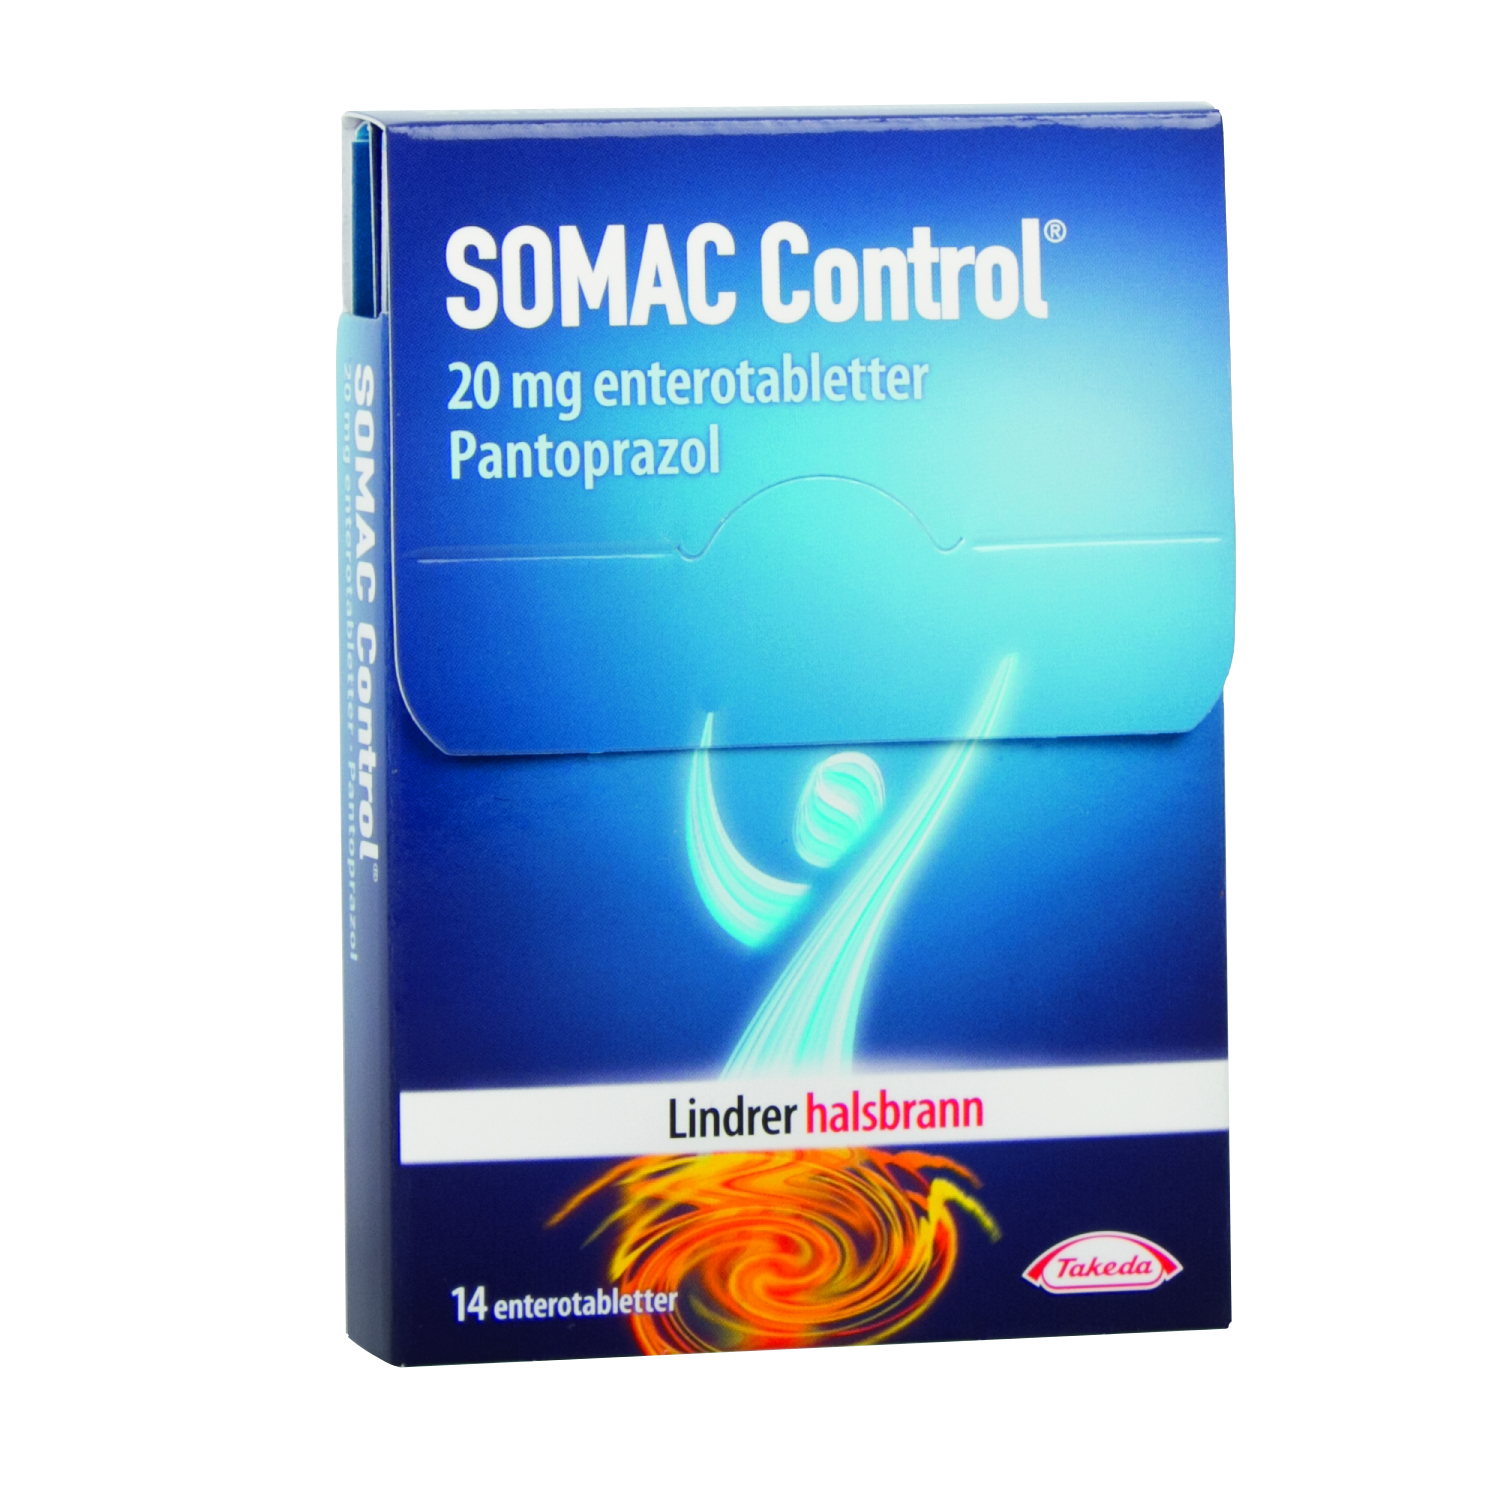 Somac Control Enterotabletter 20mg, 14 stk. på brett